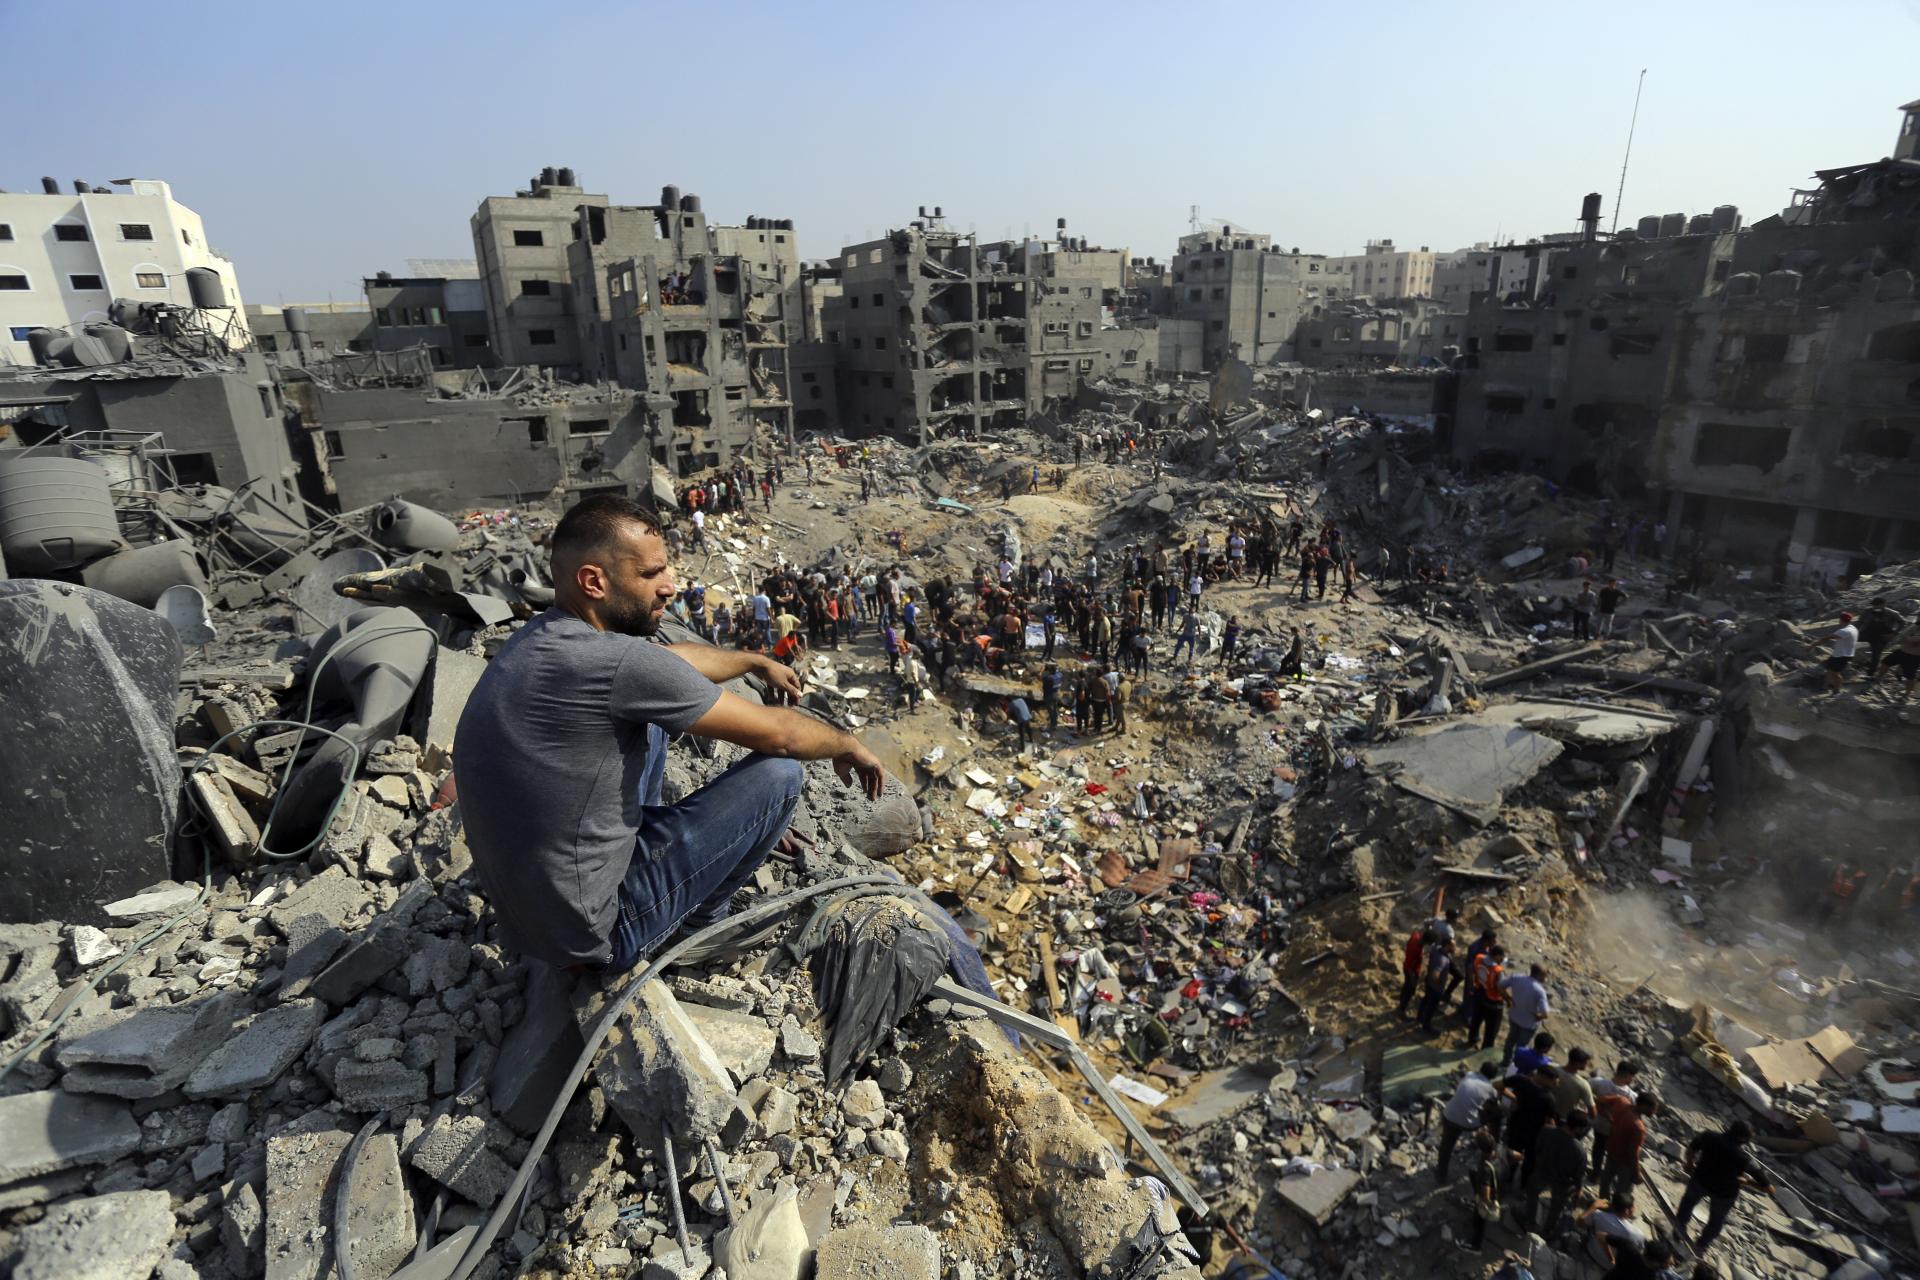 Bombardovanie Gazy poškodilo desaťtisíce budov, ukazujú satelitné snímky